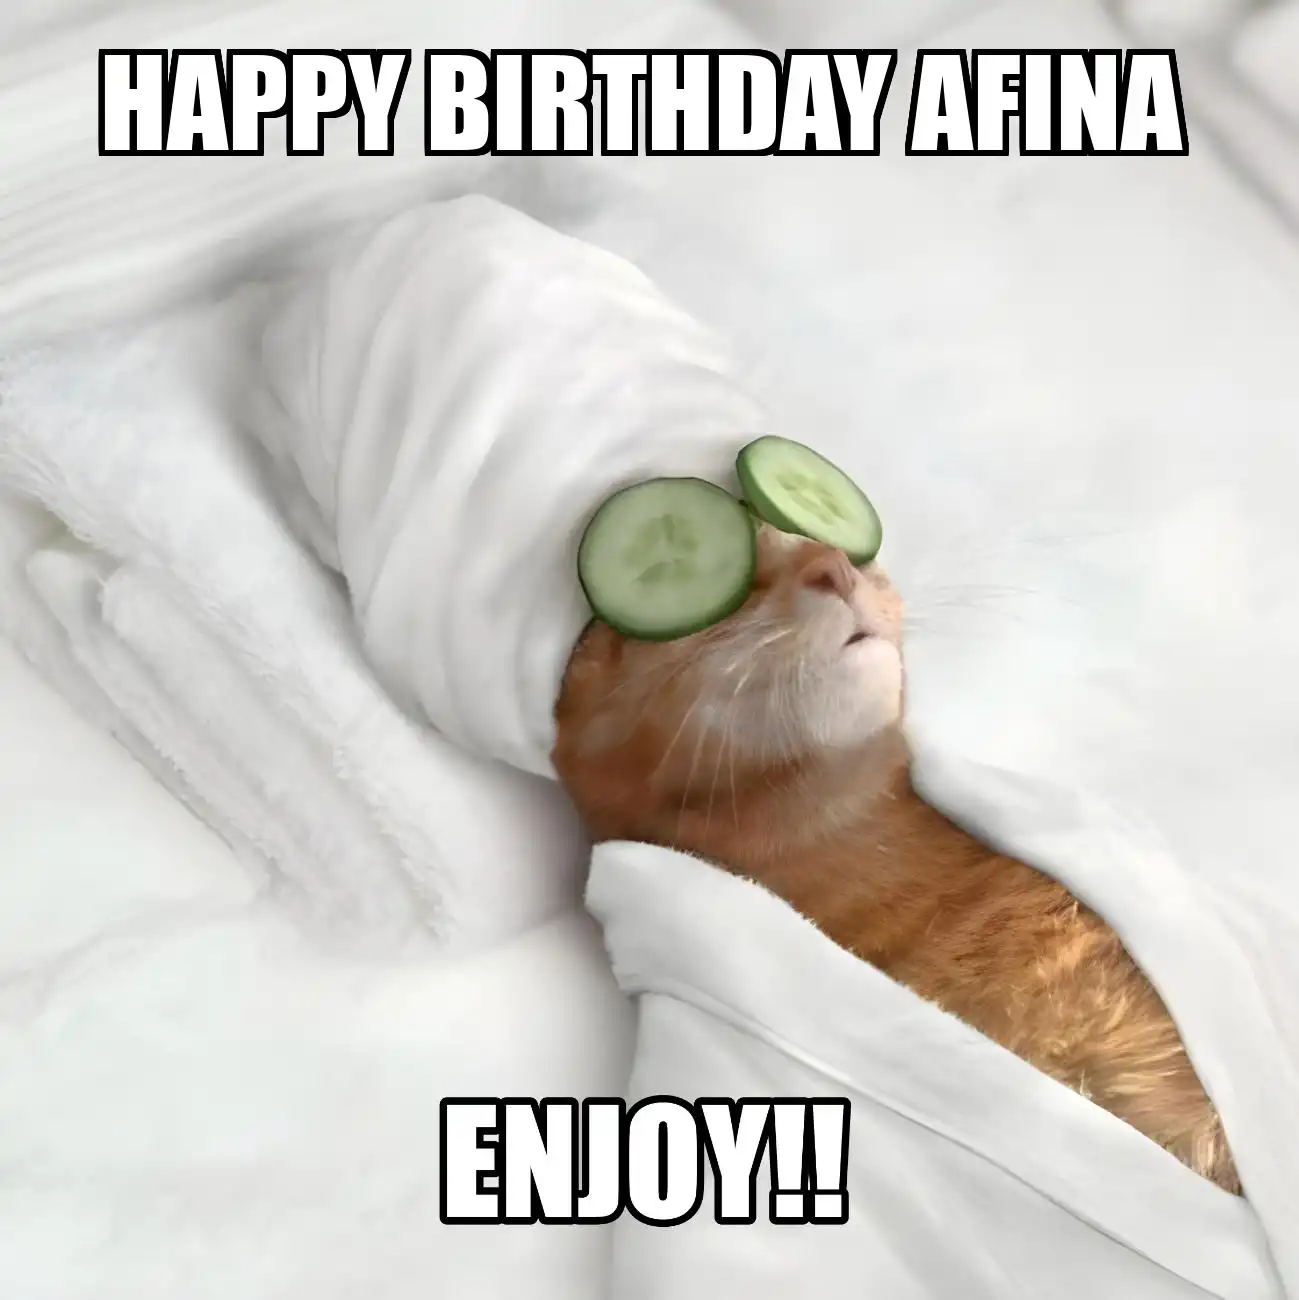 Happy Birthday Afina Enjoy Cat Meme